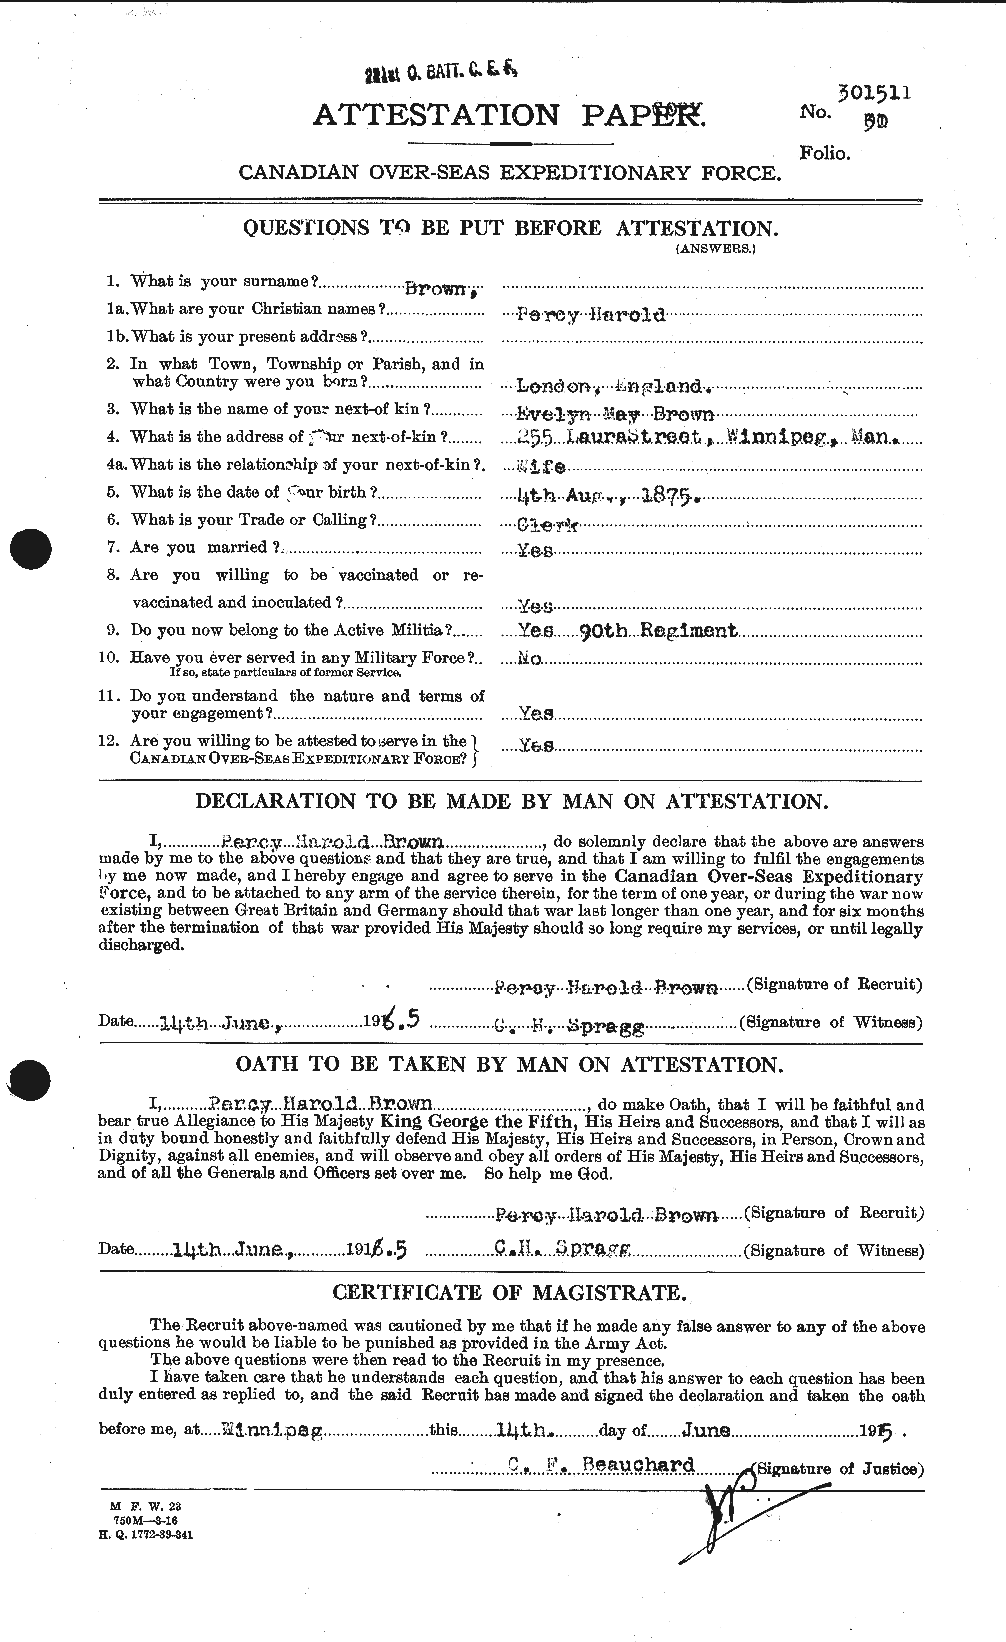 Dossiers du Personnel de la Première Guerre mondiale - CEC 267170a